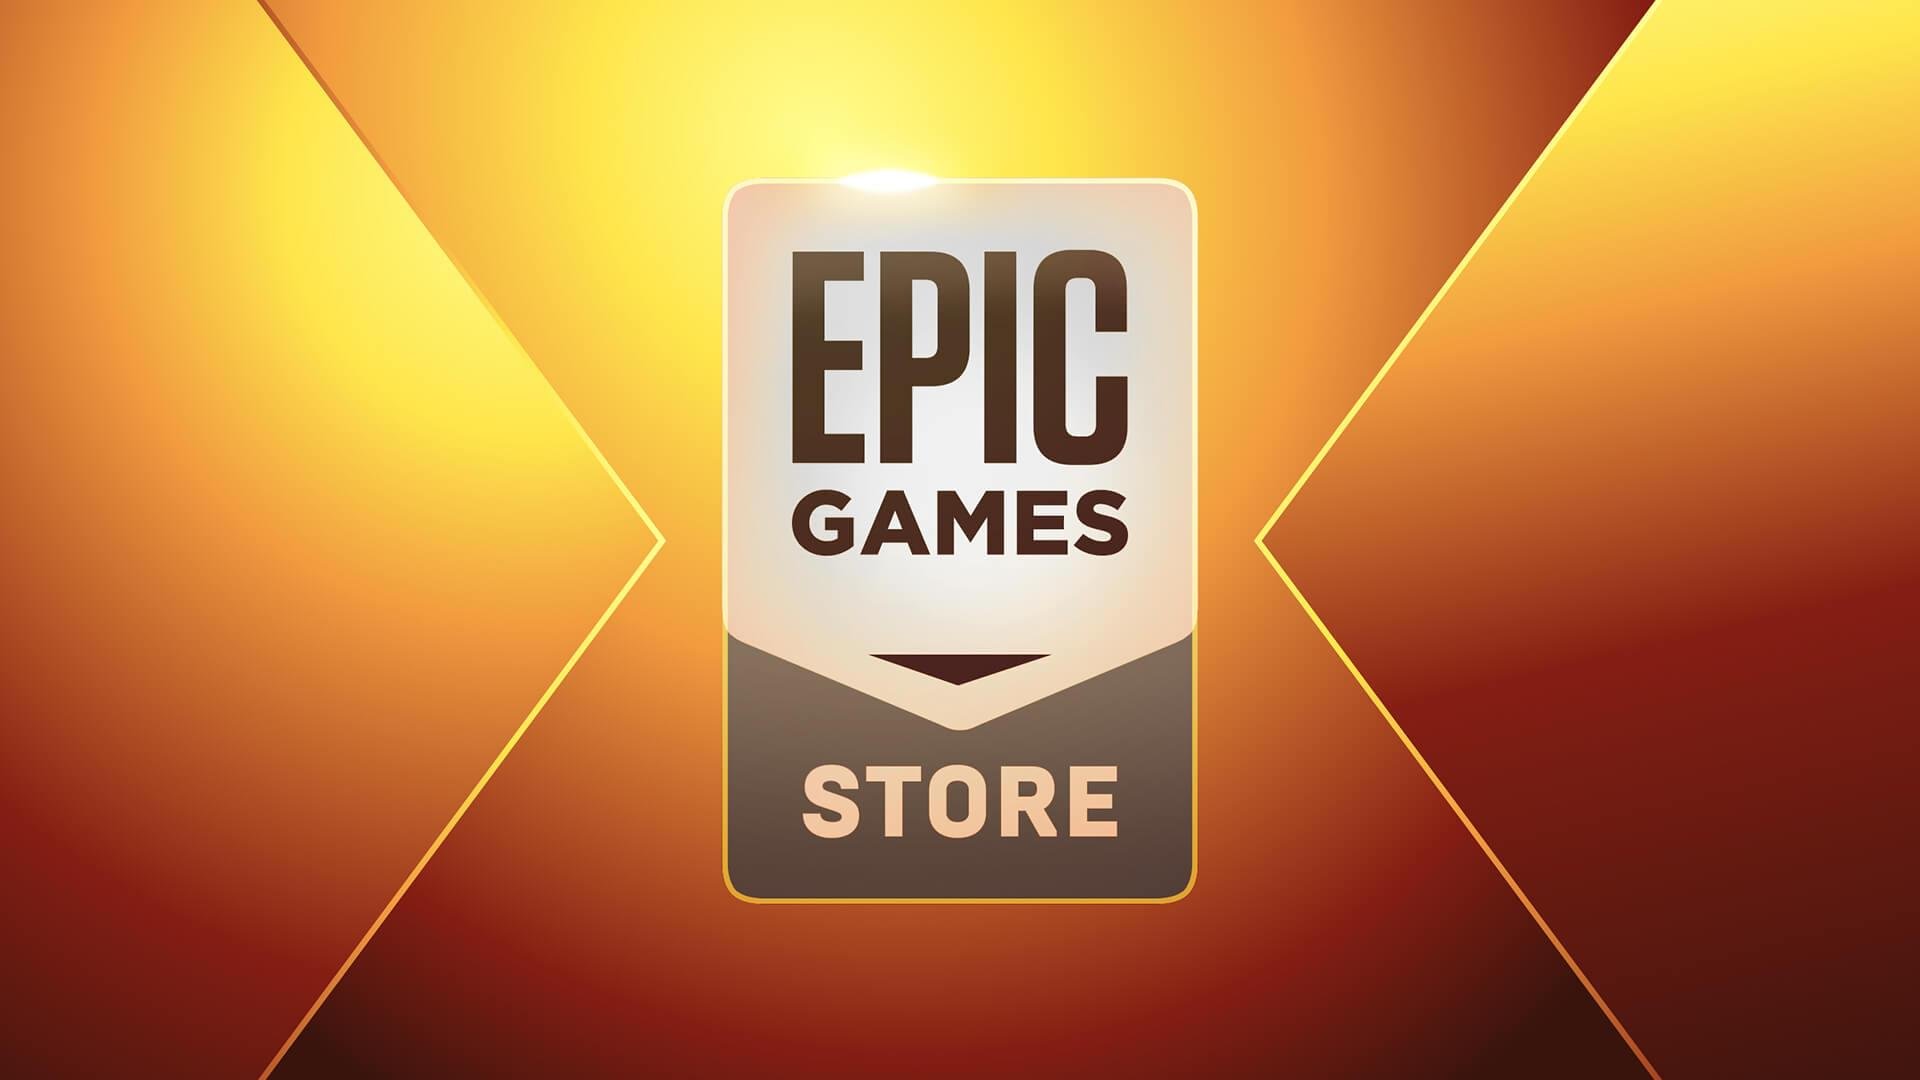 Chess Ultra e Pacote Iniciante de World of Warships estão de graça na Epic  Games Store